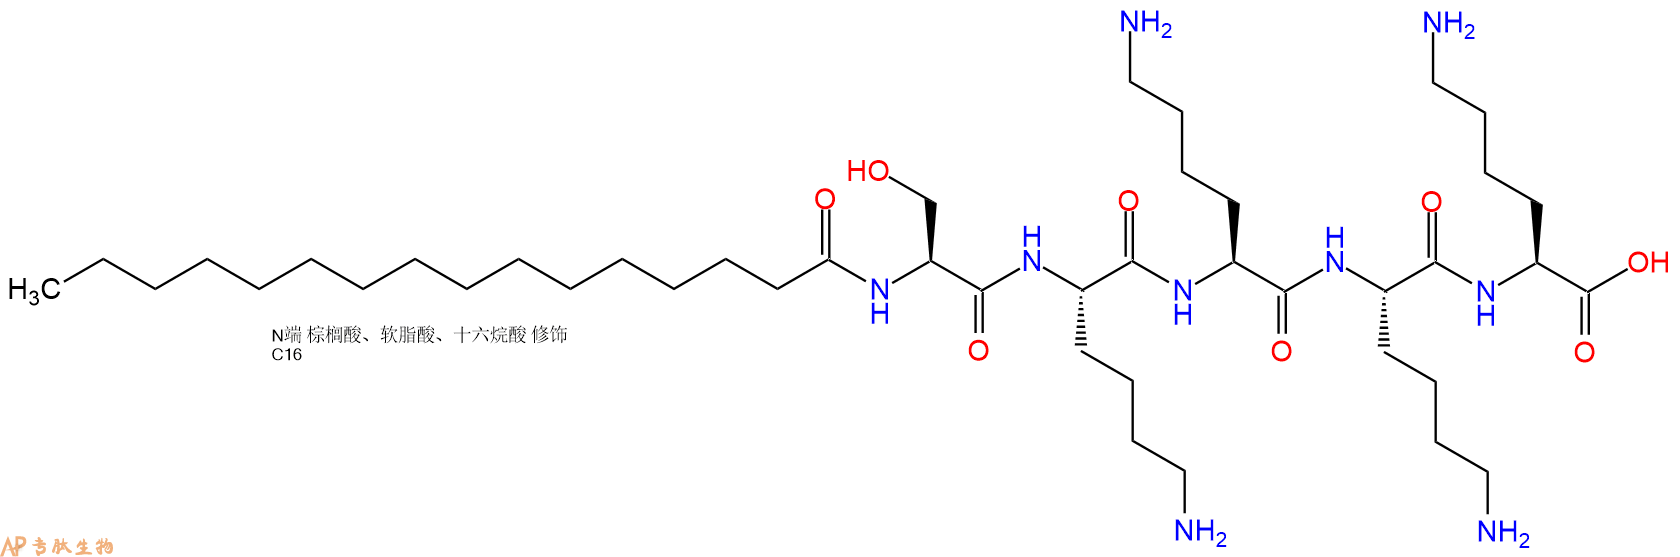 专肽生物产品棕榈酸-Ser-Lys-Lys-Lys-Lys